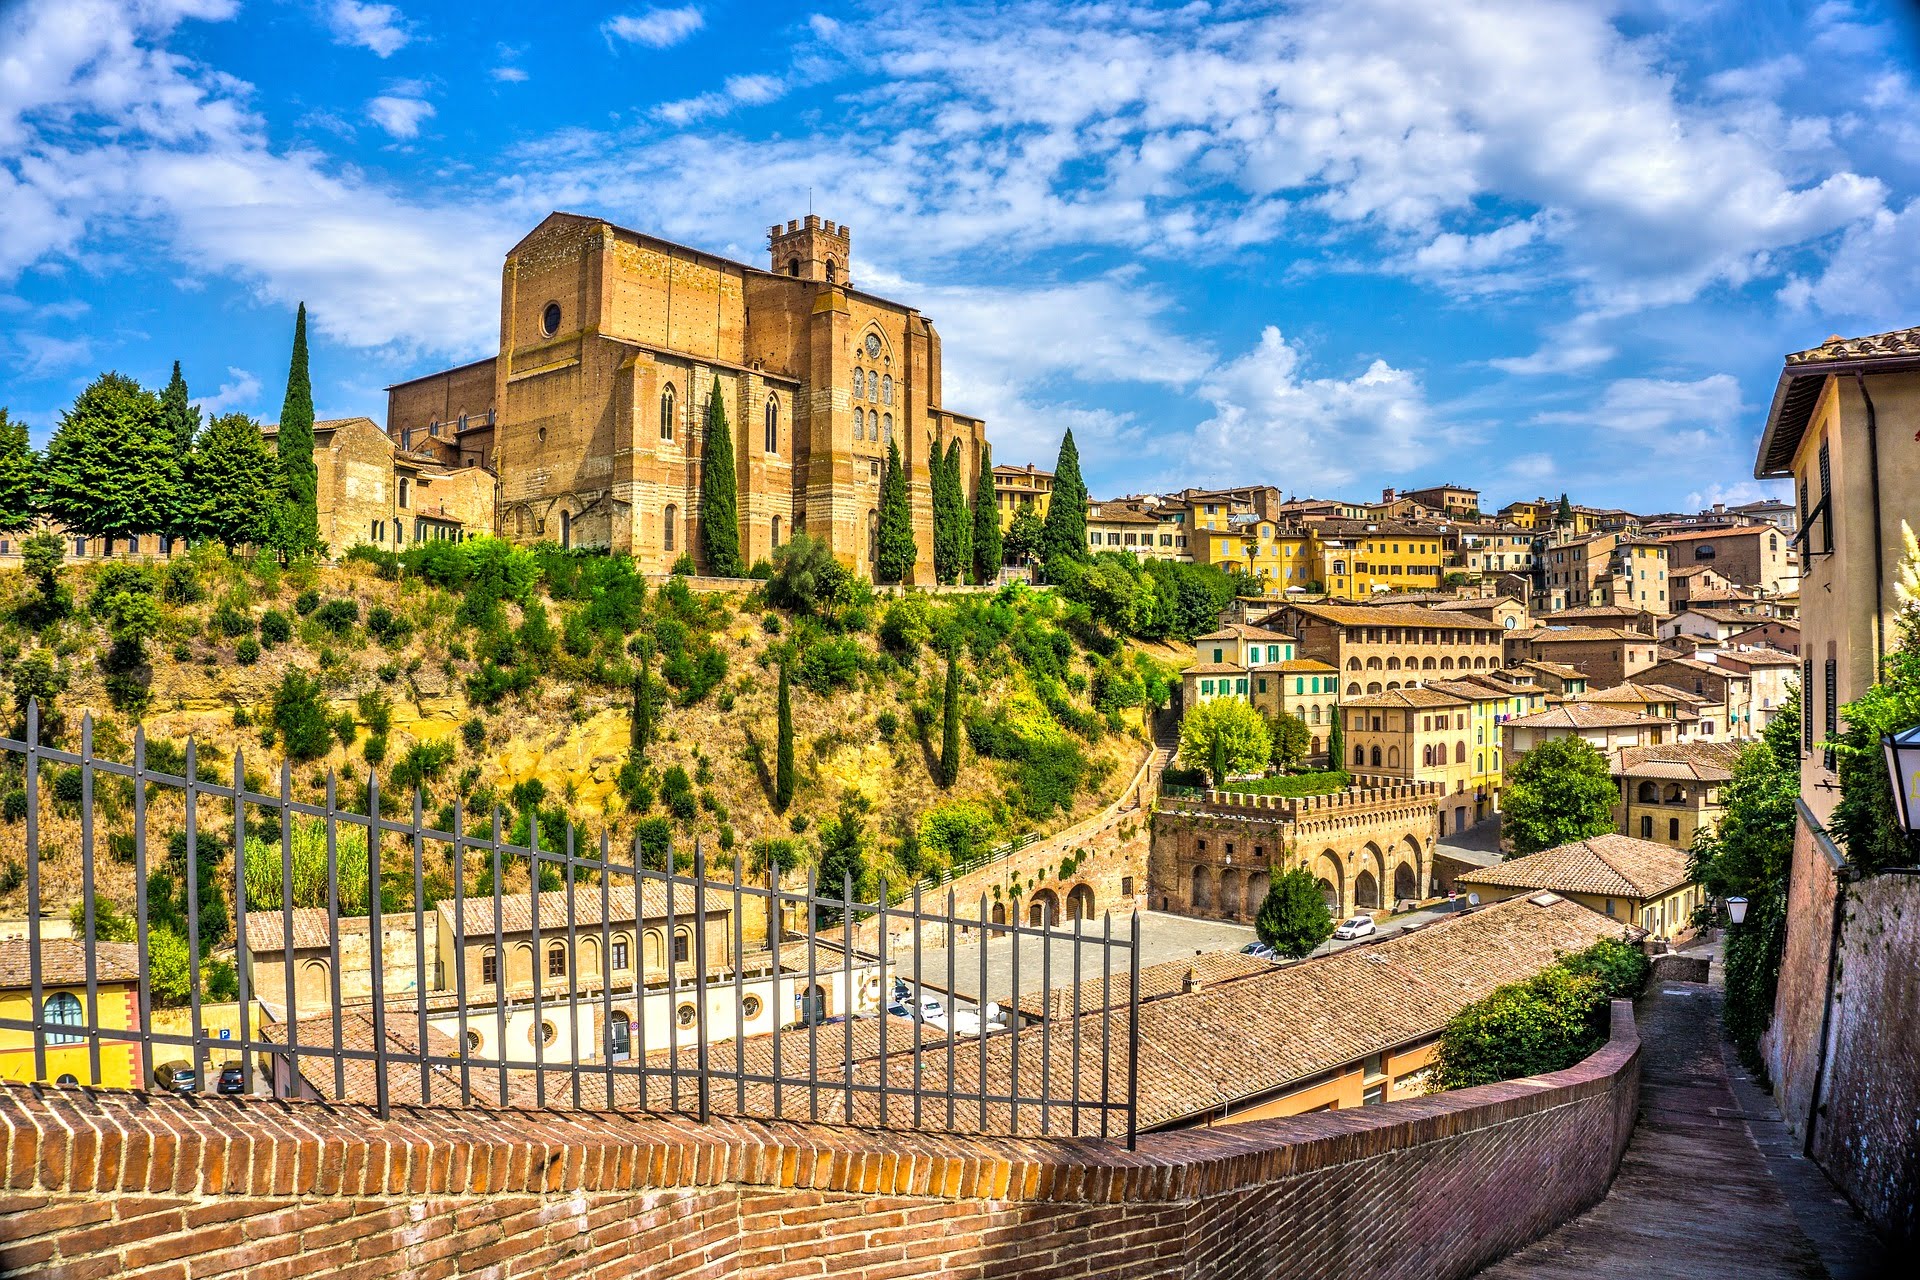 Siena, Tuscany, Italy - virtual tour - YouTube